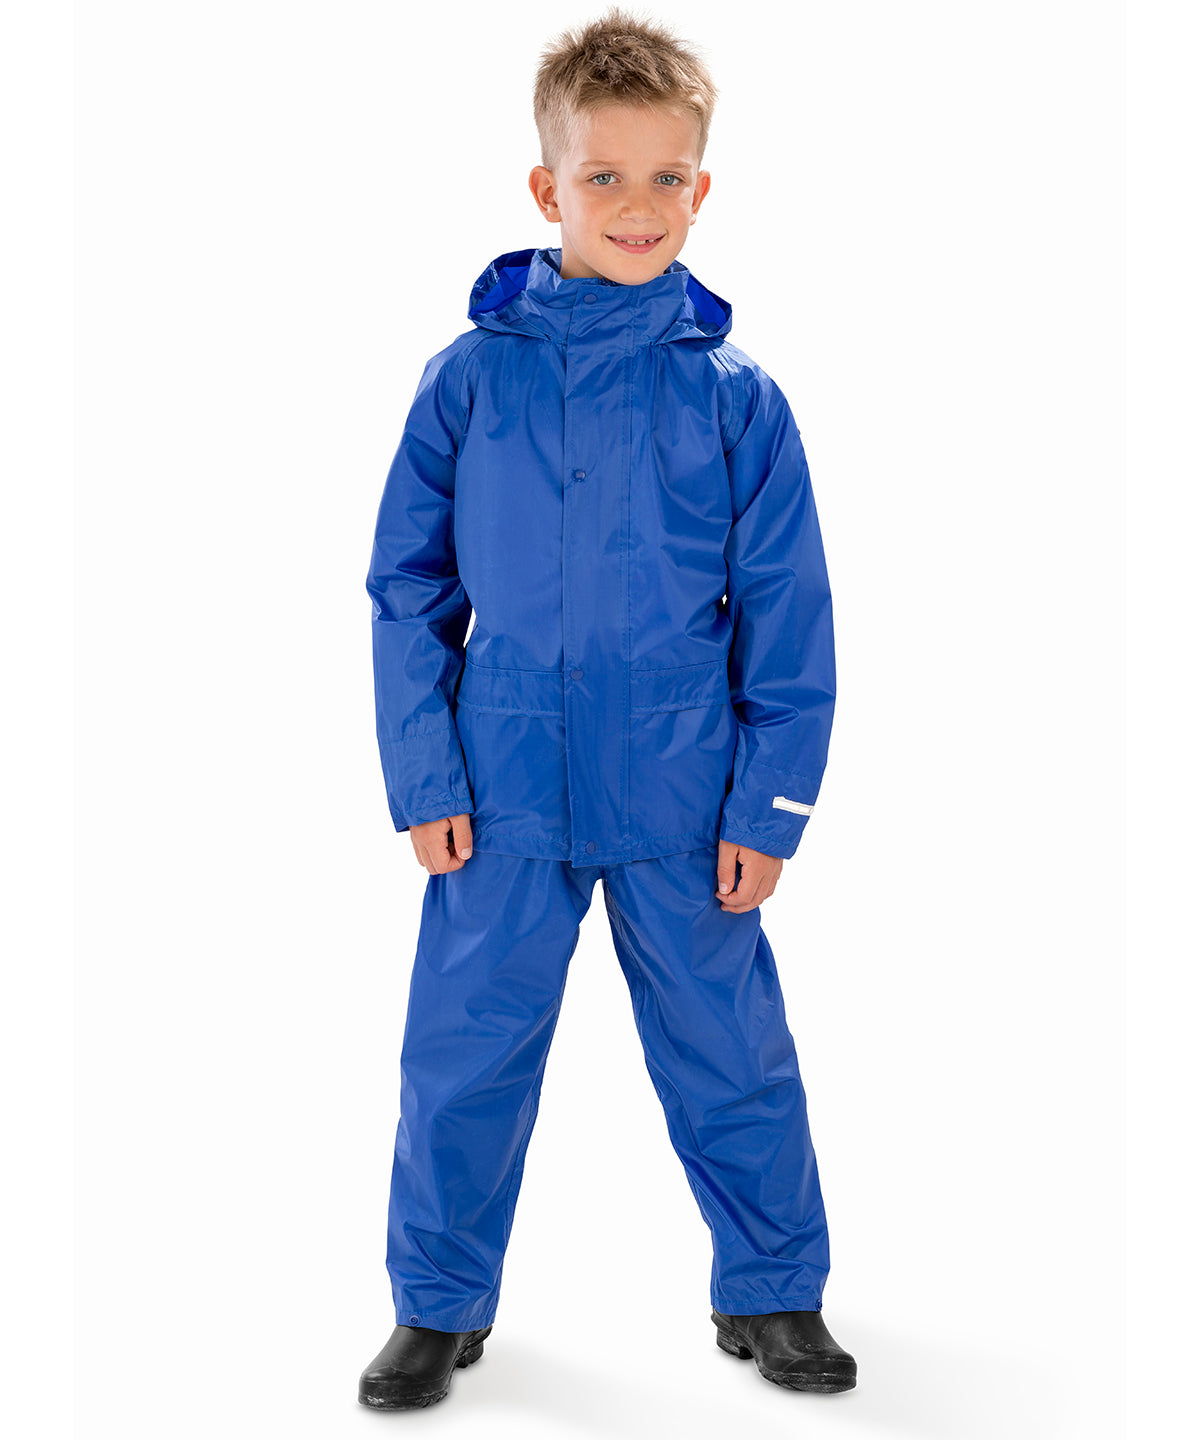 Rigningarföt - Core Junior Rain Suit